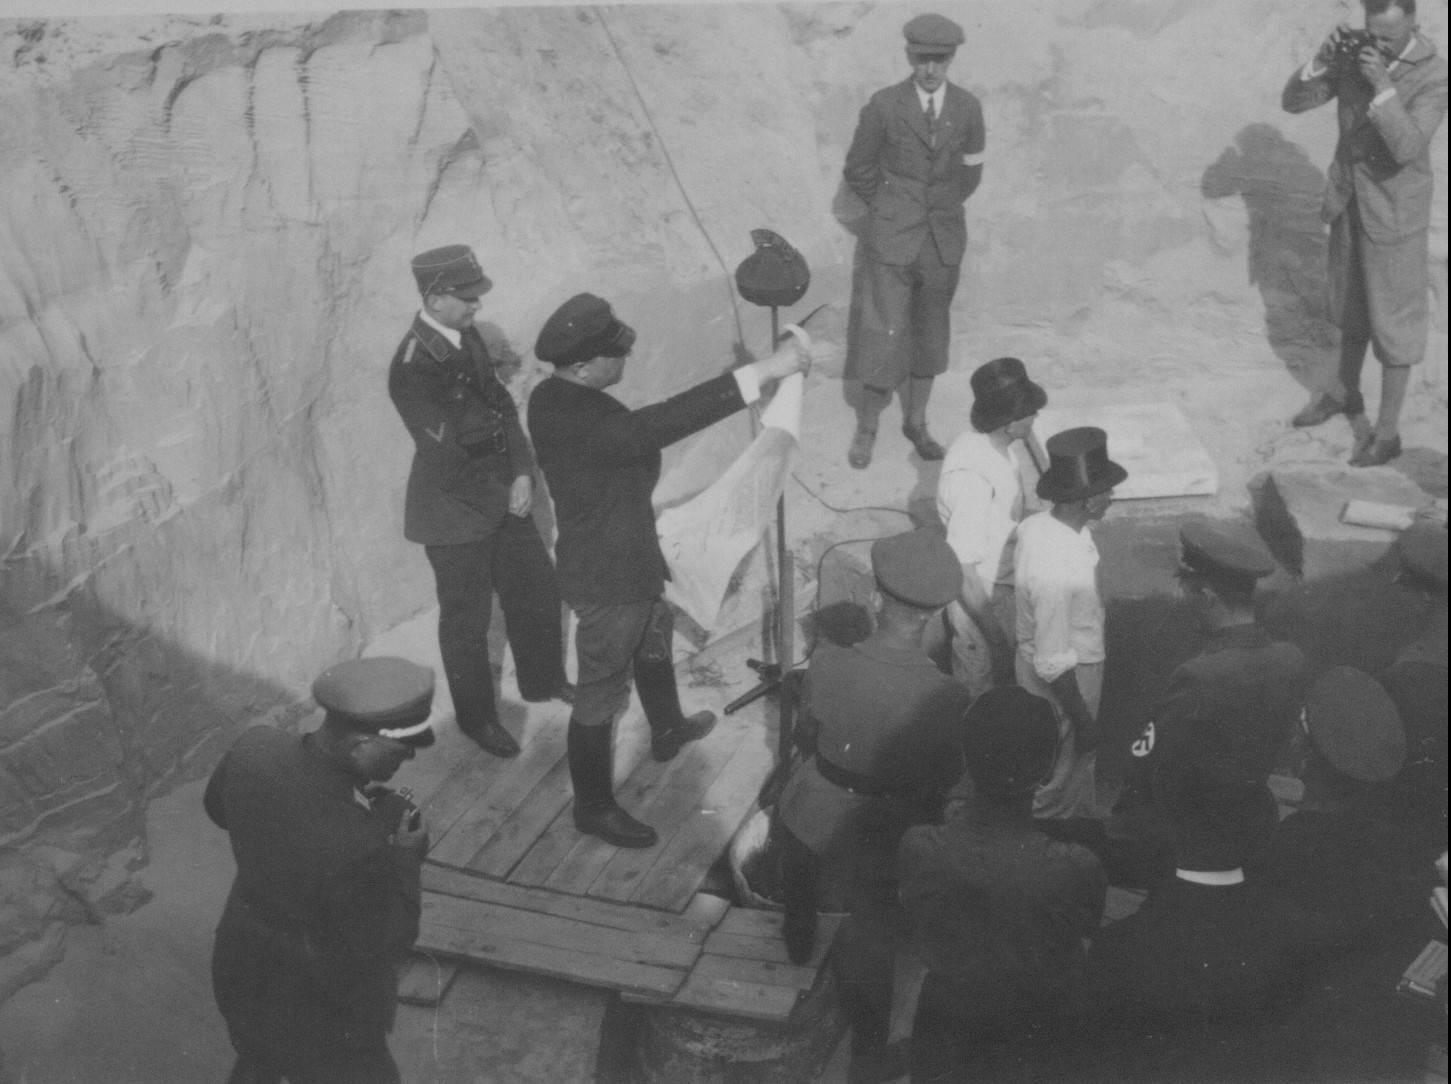 Odczytanie aktu erekcyjnego pod budowę Ordensburga w dniu 22 kwietnia 1934r. tuż przed włożeniem do kapsuły